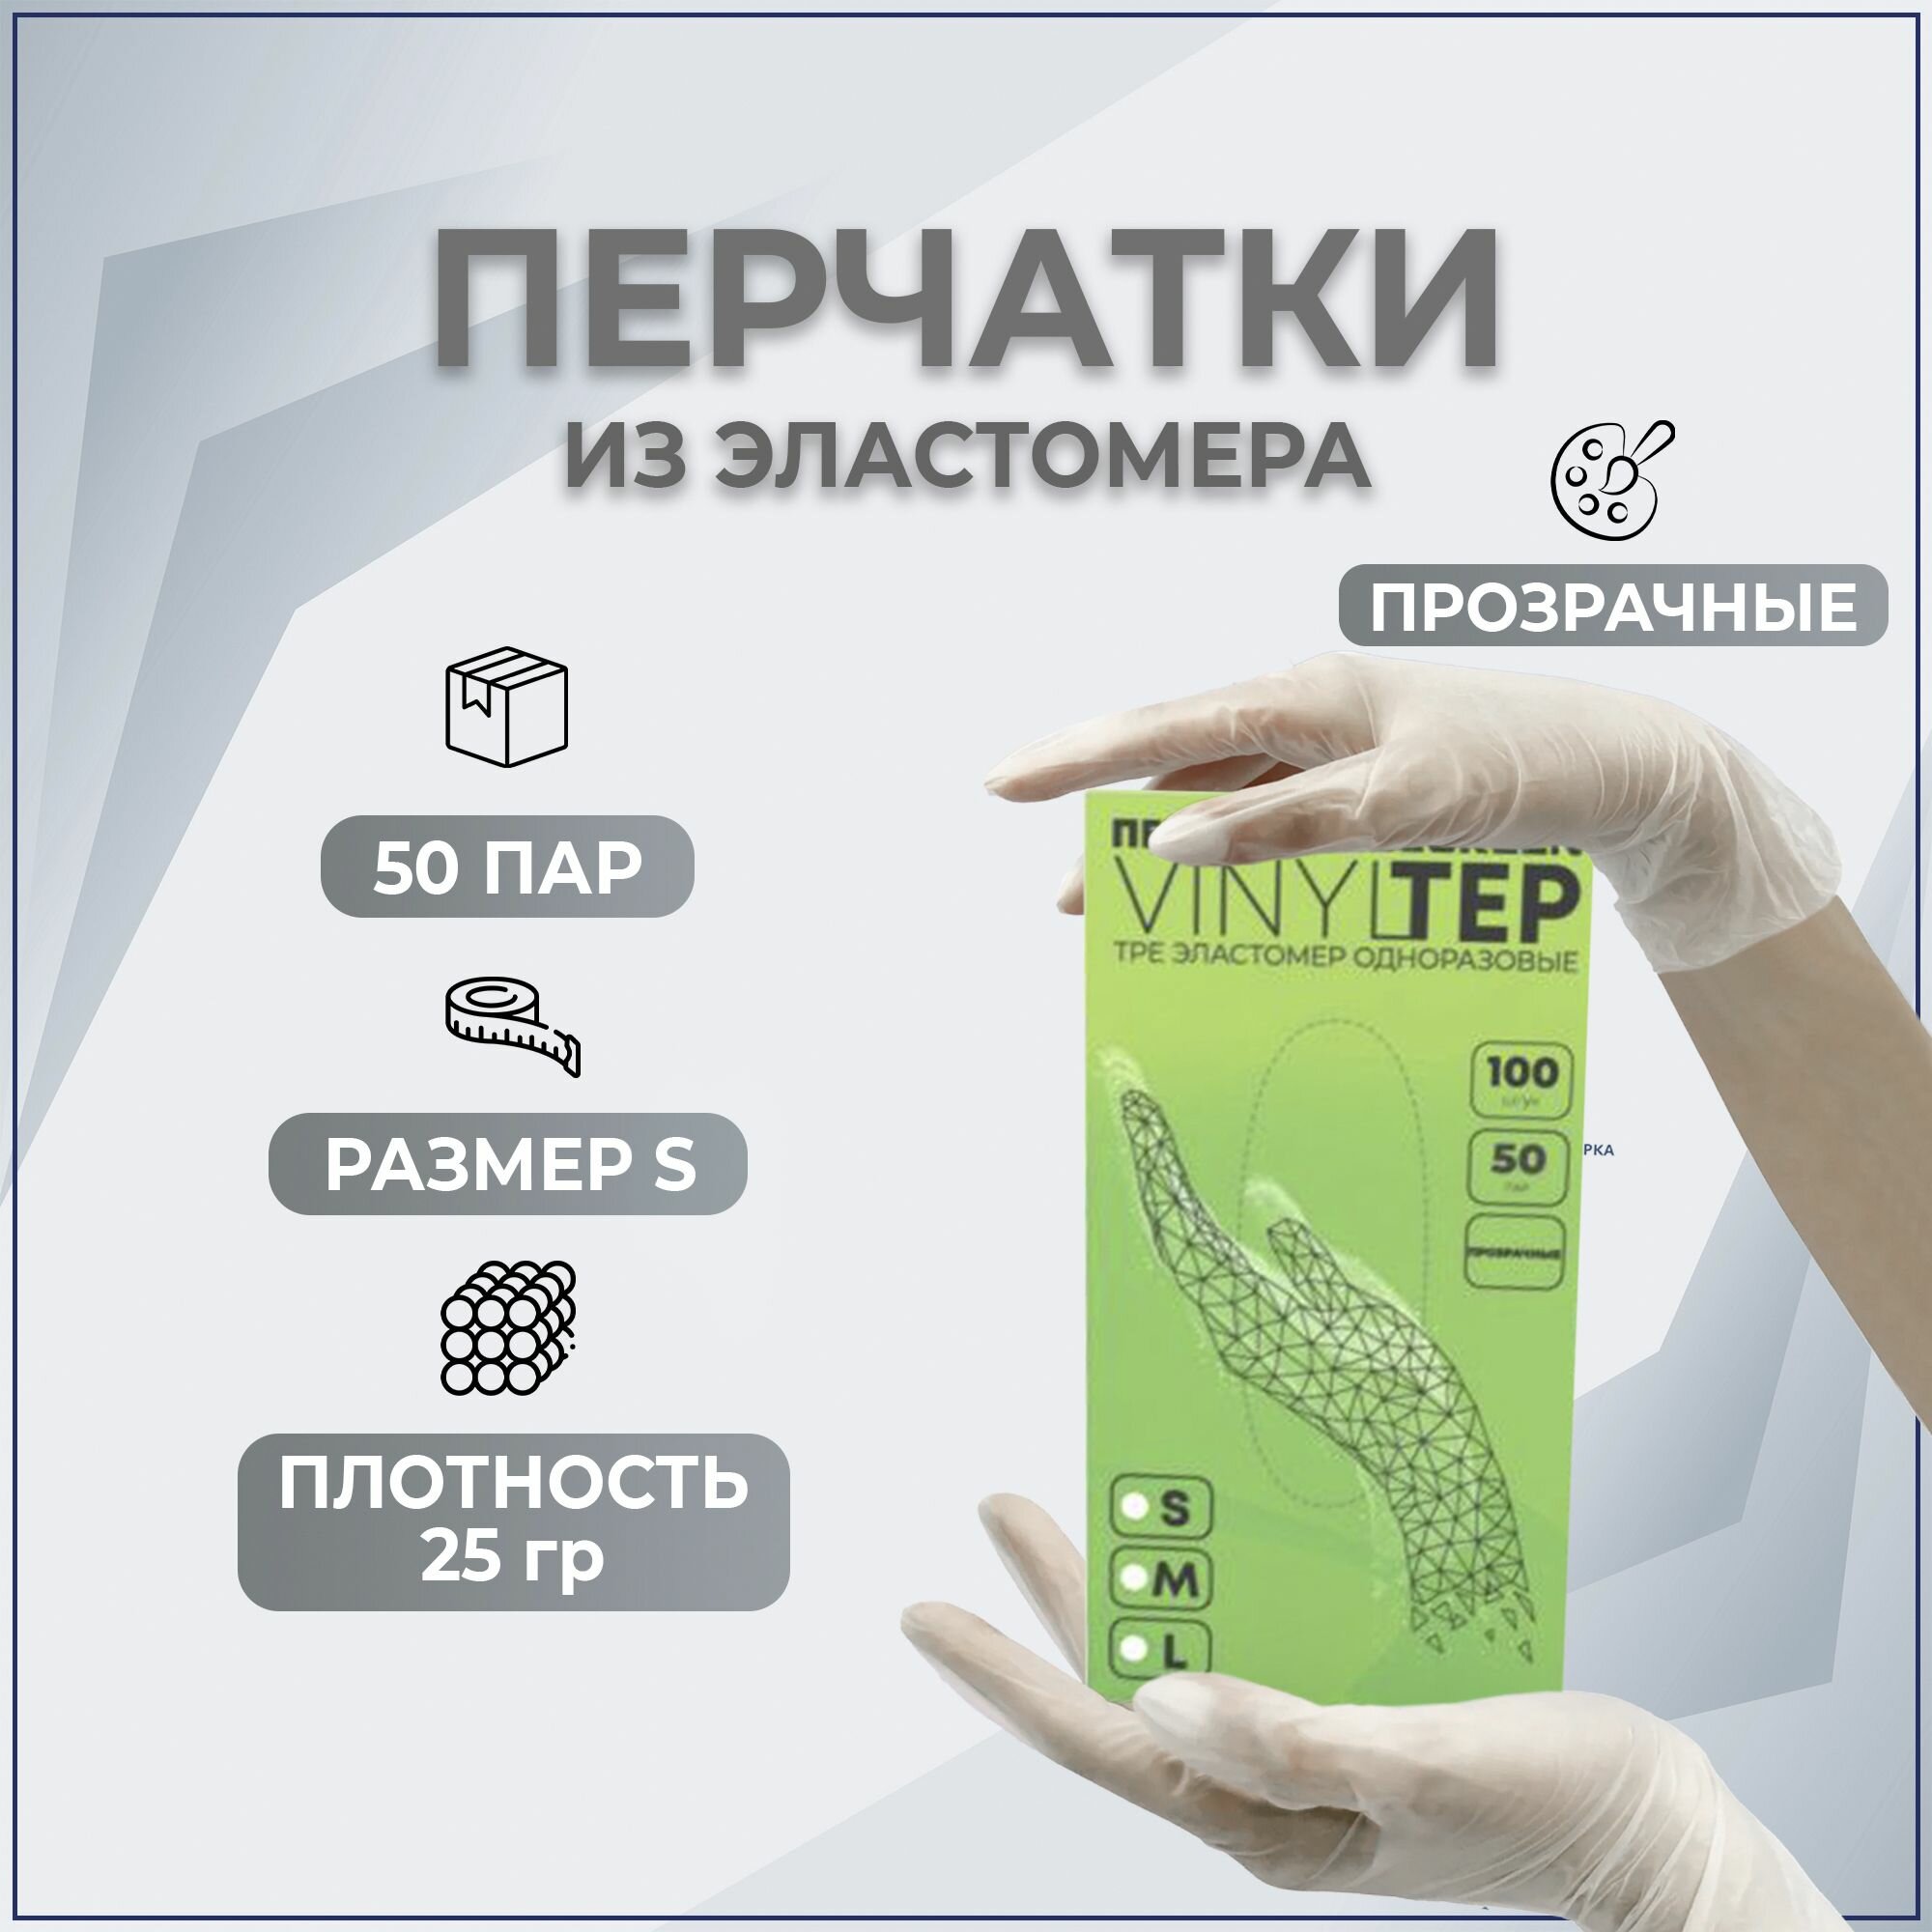 Перчатки Elegreen VINYLTEP TPE эластомер одноразовые прозрачные, S(50 пар)